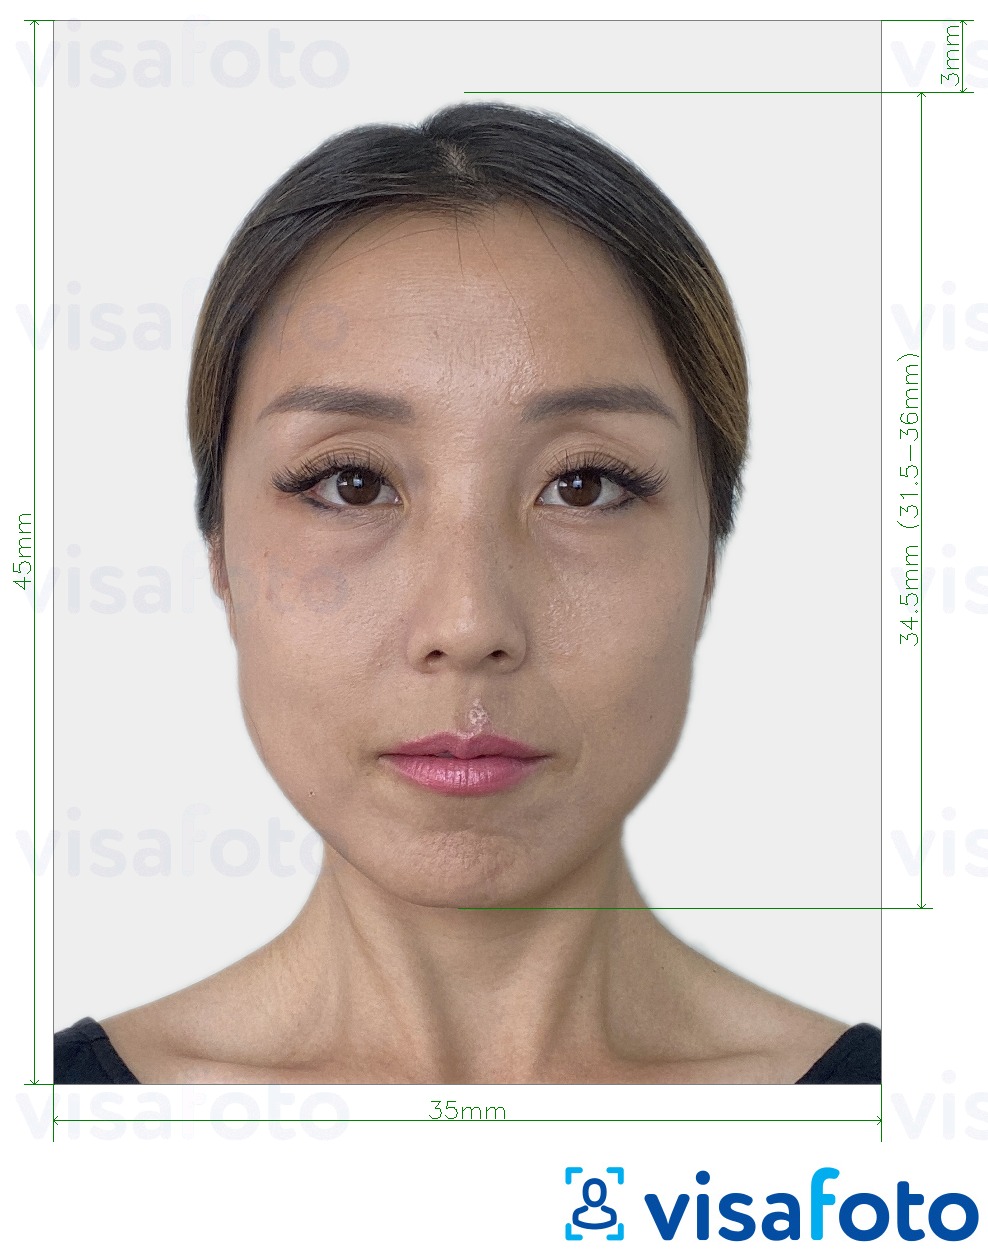 نمونه ی یک عکس برای پاسپورت کره جنوبی 35x45 میلی متر (3.5x4.5 سانتی متر) با مشخصات دقیق